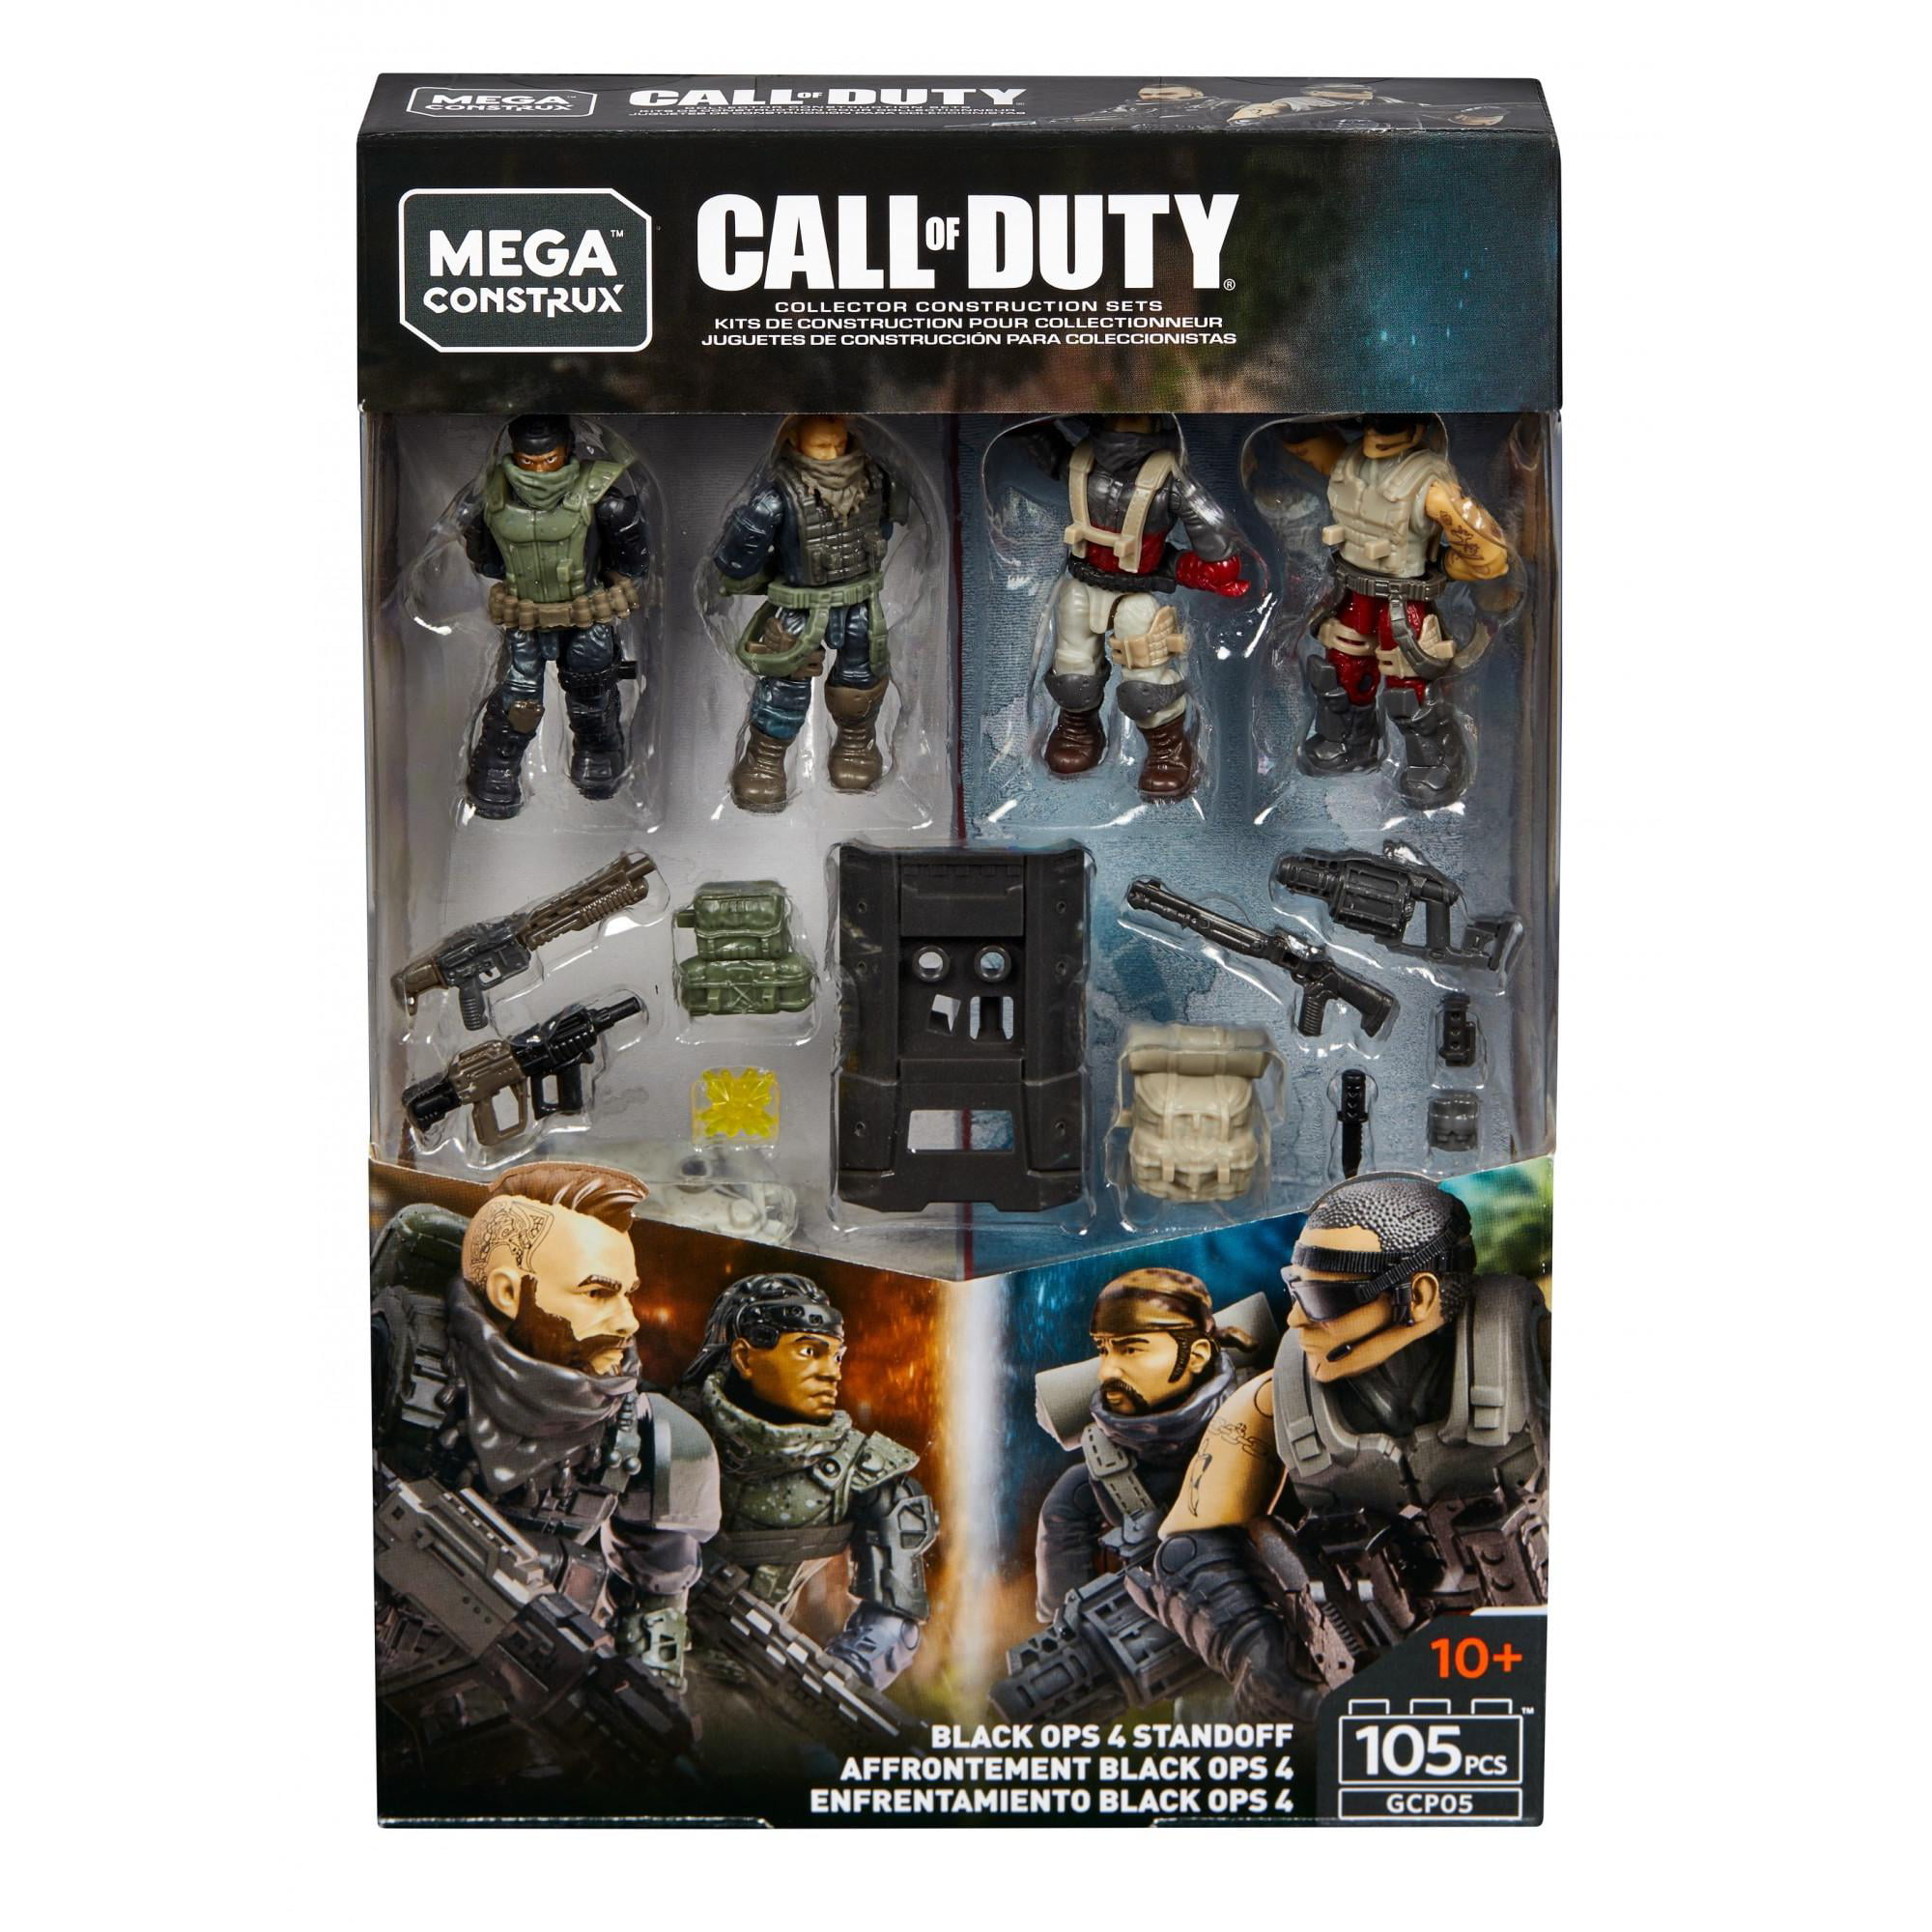 BLACK OPS 4. MEGA Construx Call of Duty SERIE 5 rovinare Figura 